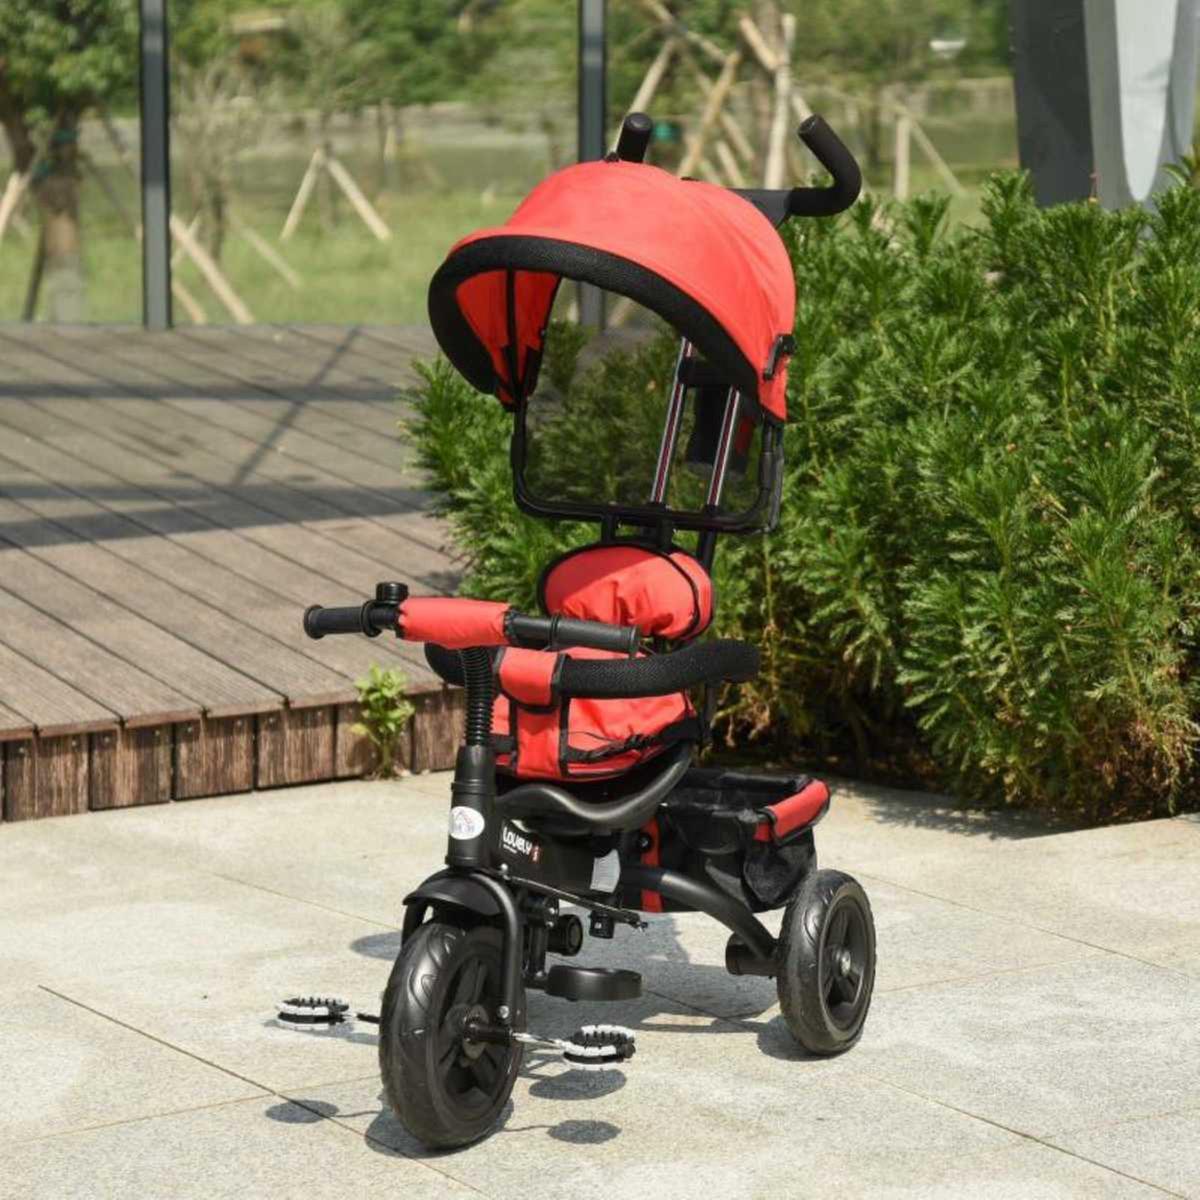 Homcom - Triciclo para Bebé multifuncional | Go Karts | Toys"R"Us España